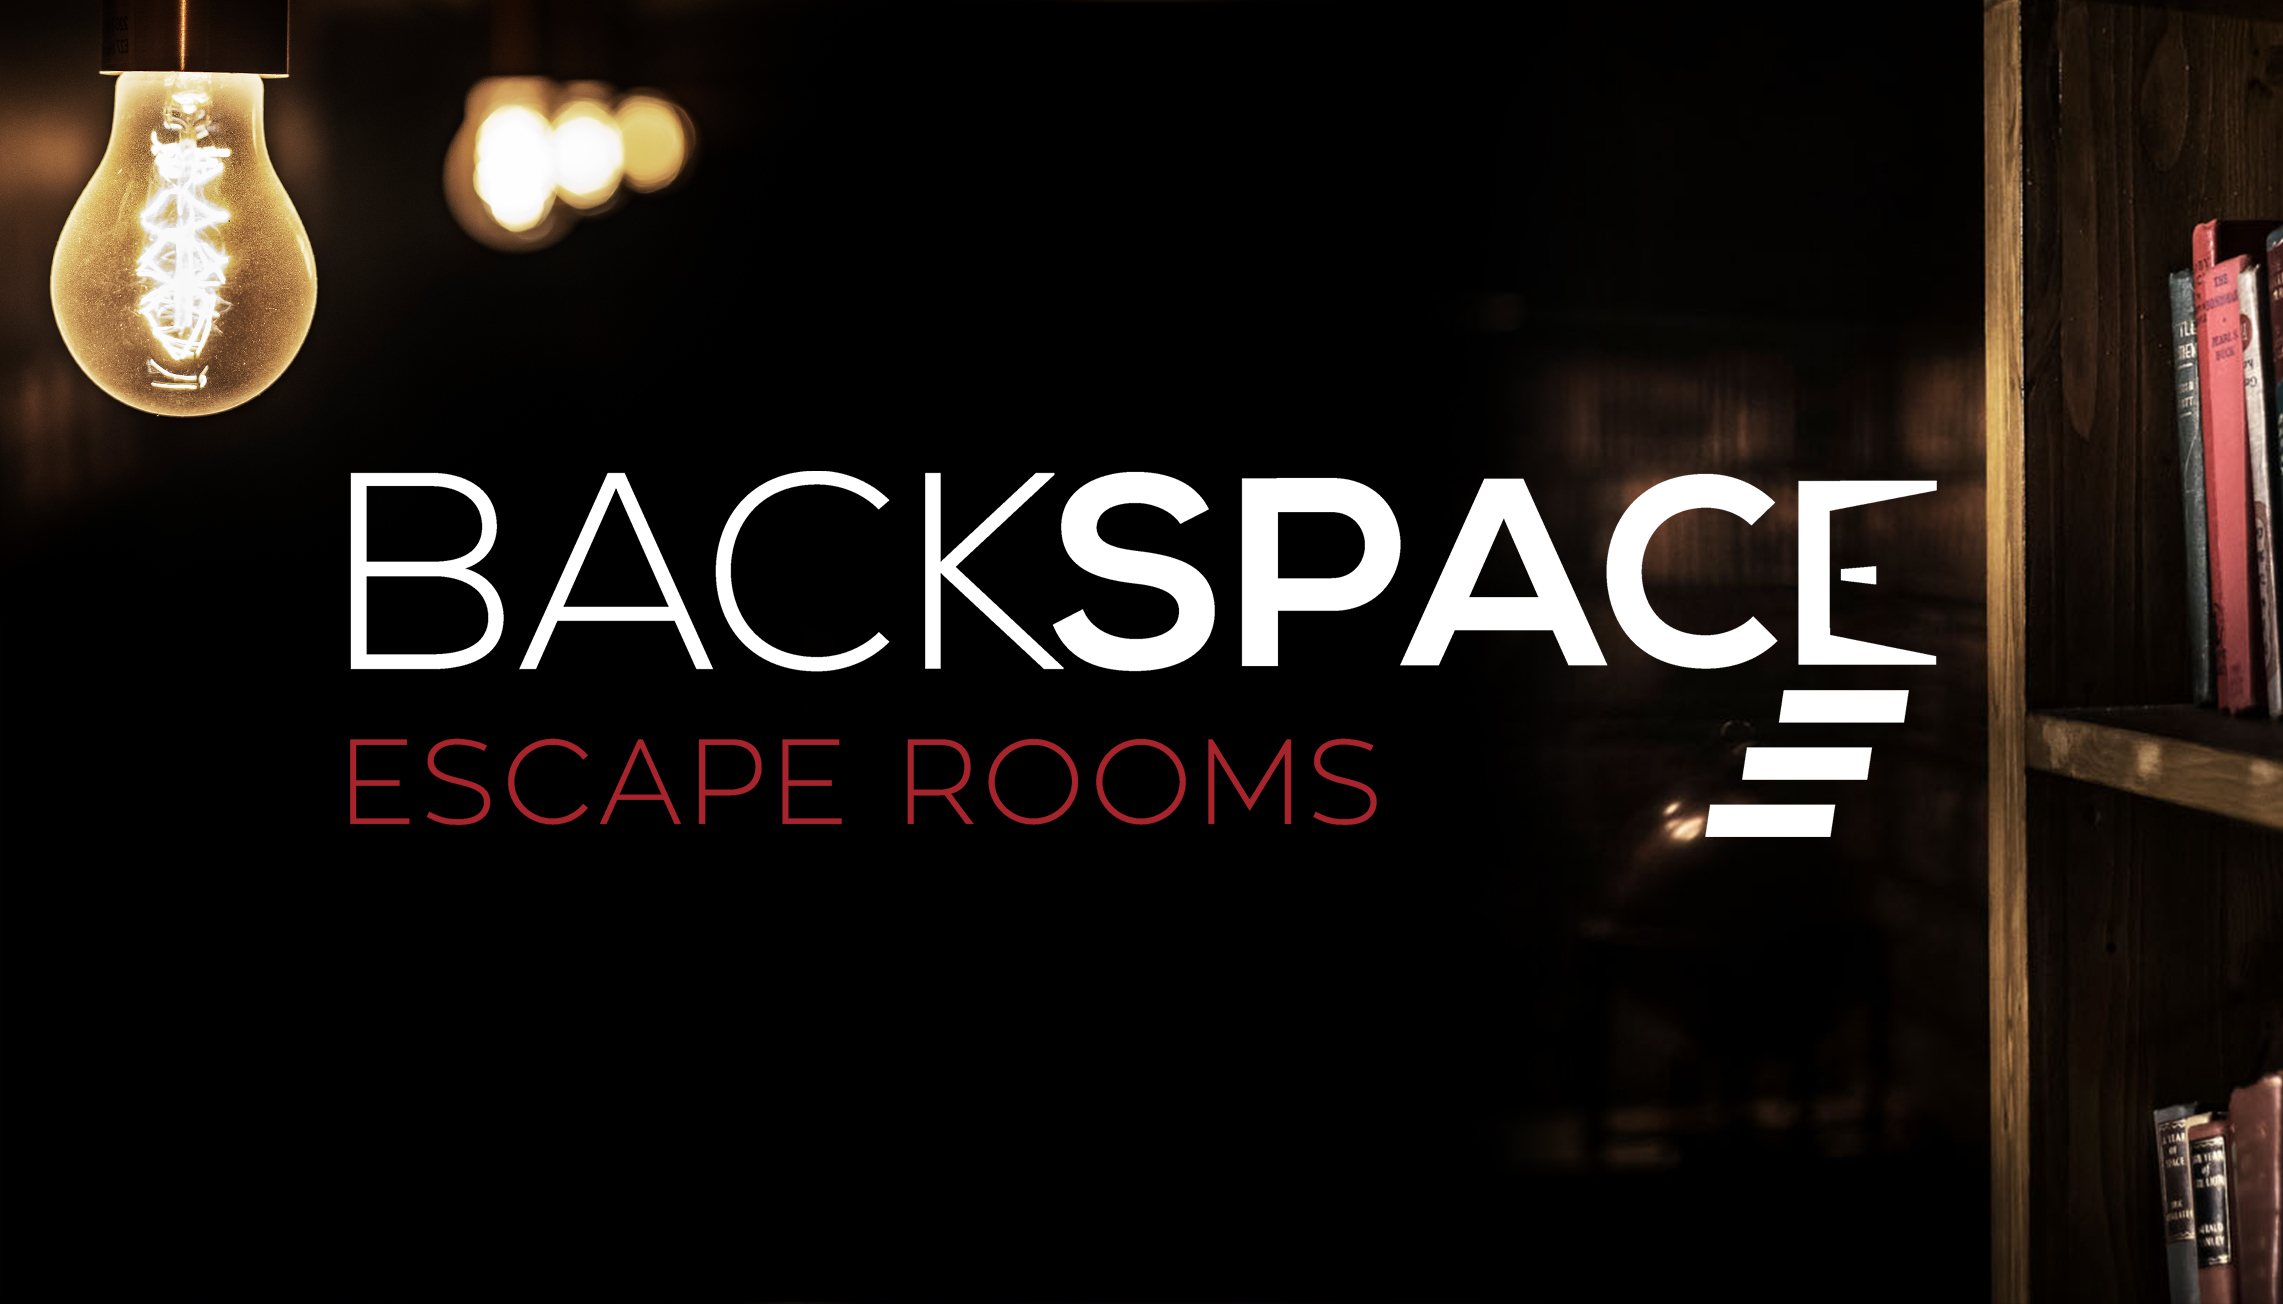 De waarheid vertellen Kan weerstaan wortel Backspace Escape rooms Amsterdam • Reviews, Ervaringen, Adres en Prijzen